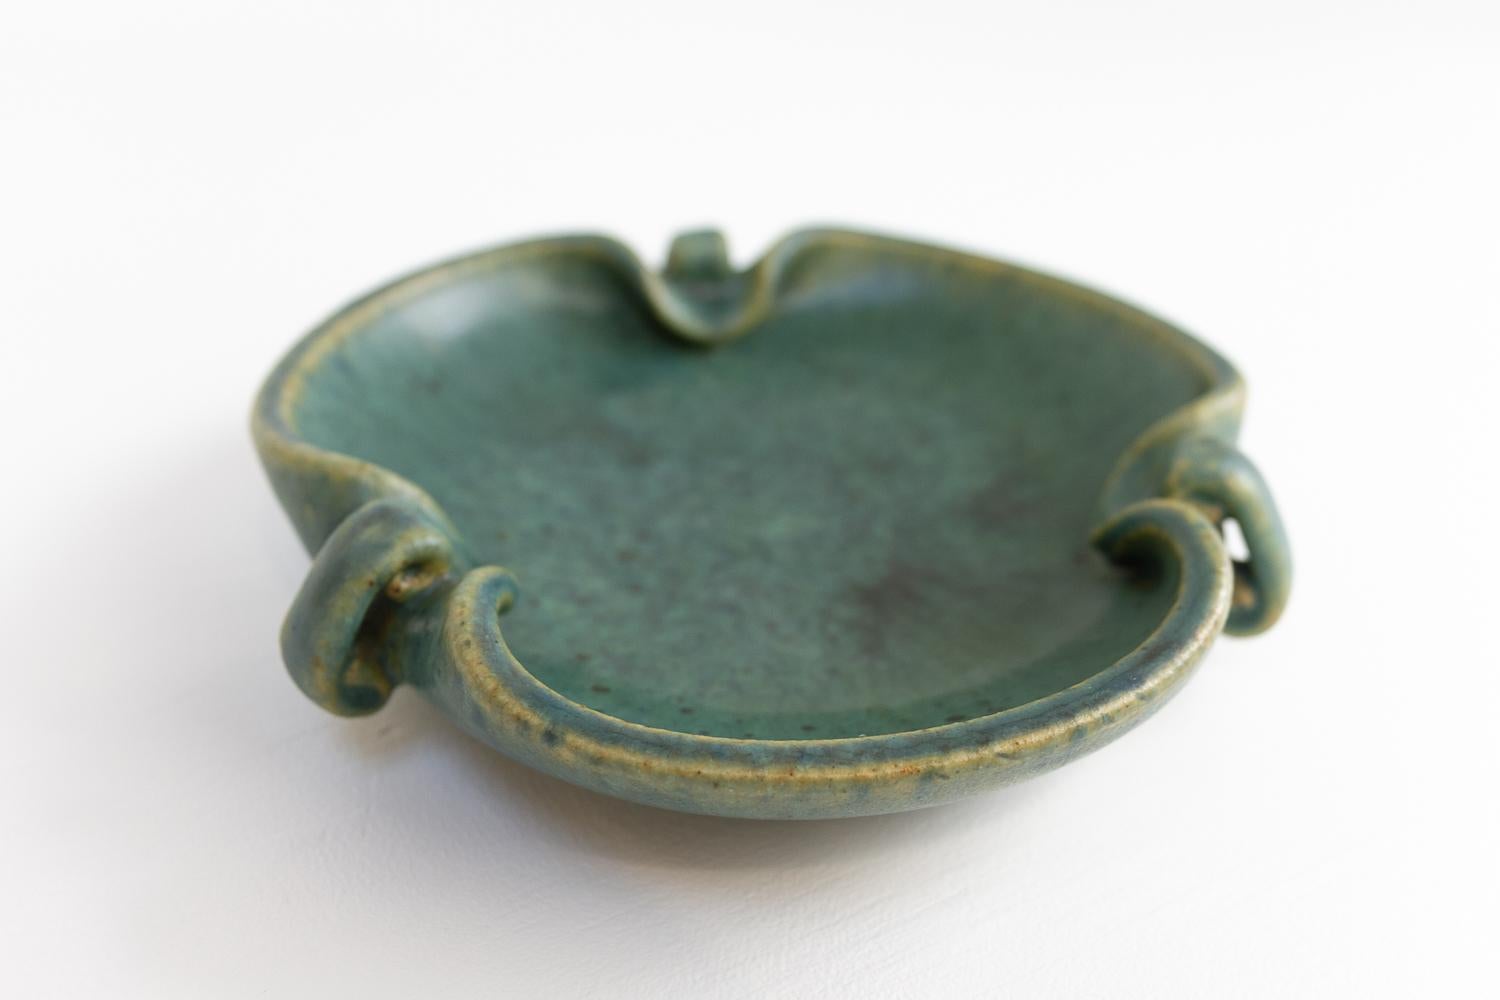 Scandinavian Modern Ceramic bowl by Arne Bang, 1940s.